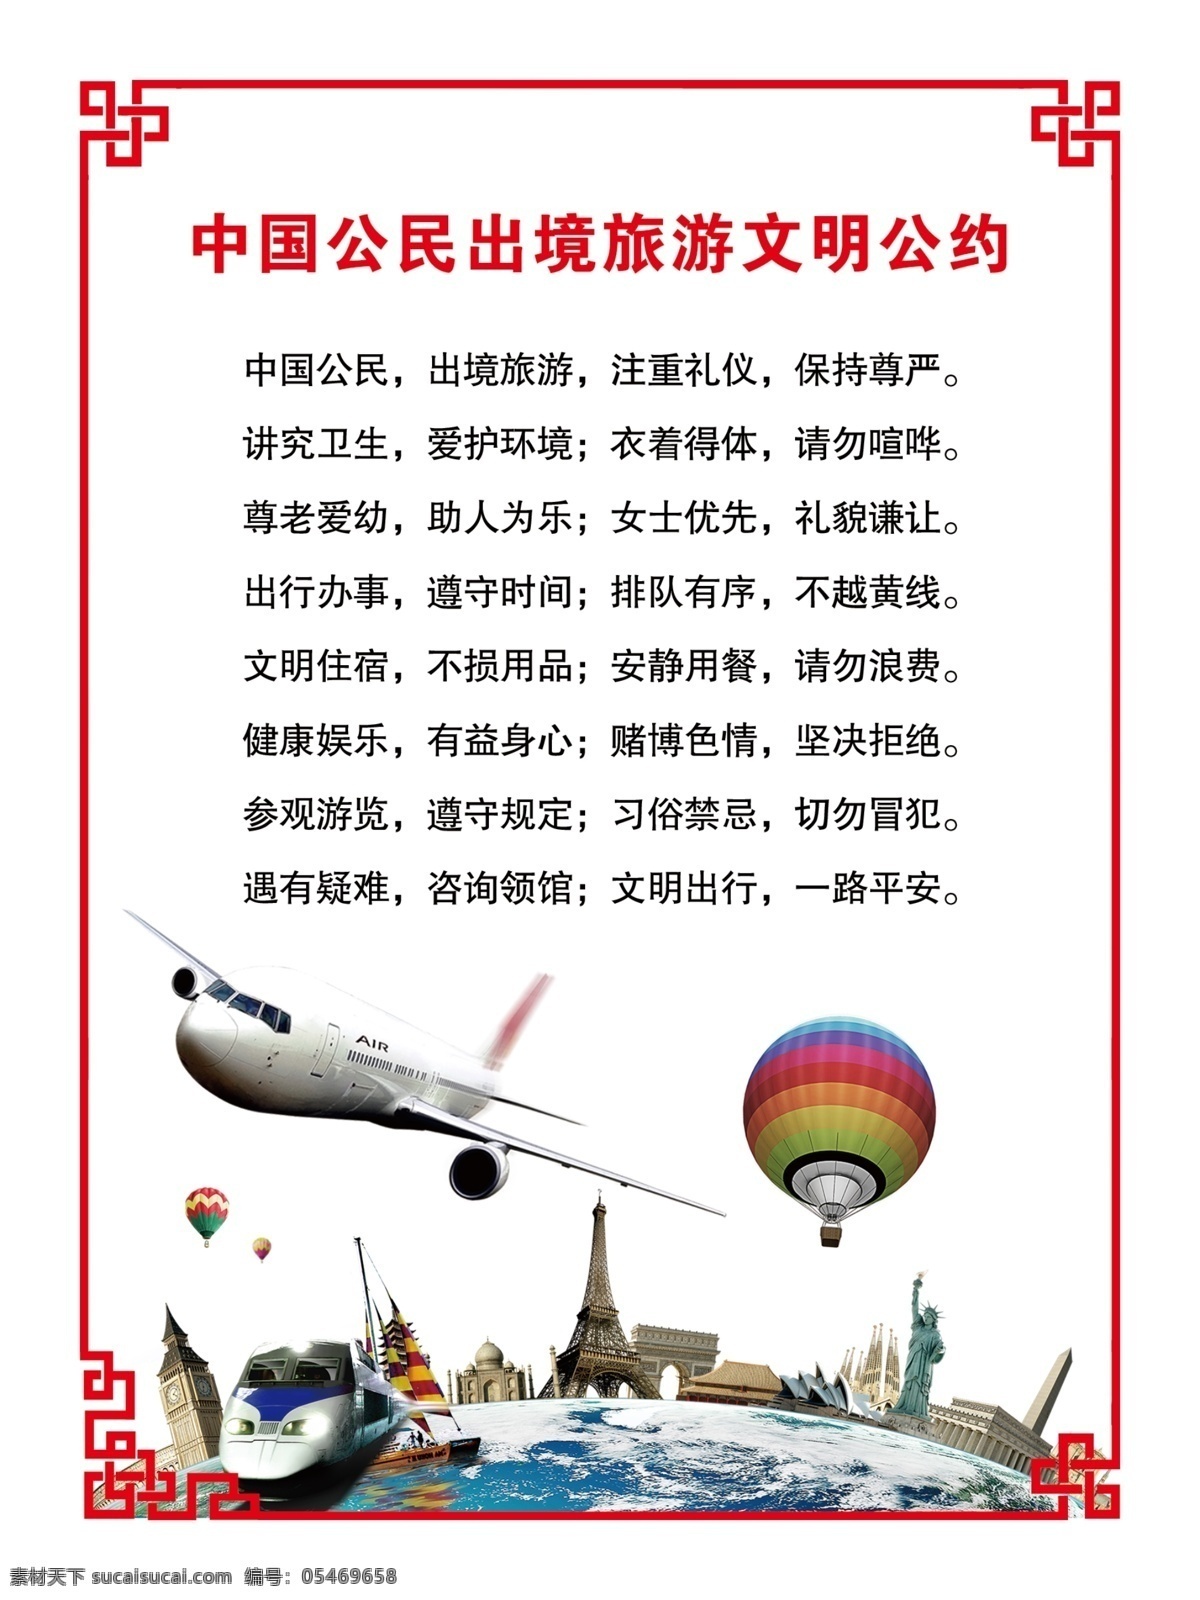 中国 公民 出境旅游 文明 公约 旅游文明公约 文明公约 旅游公约 出境旅游公约 出境文明公约